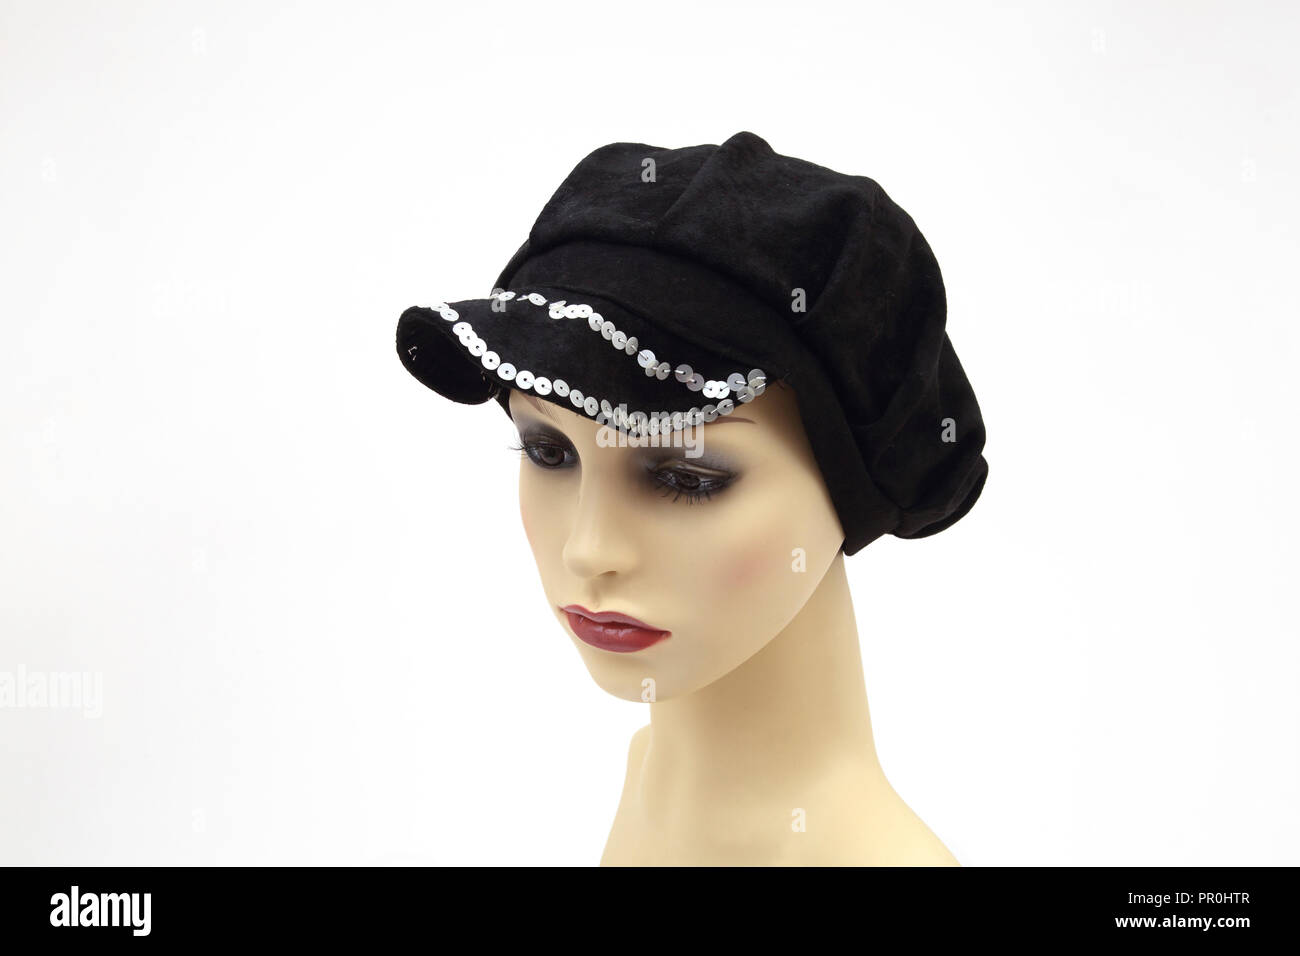 Handmade Black Velvet Hat with Sequins Stock Photo